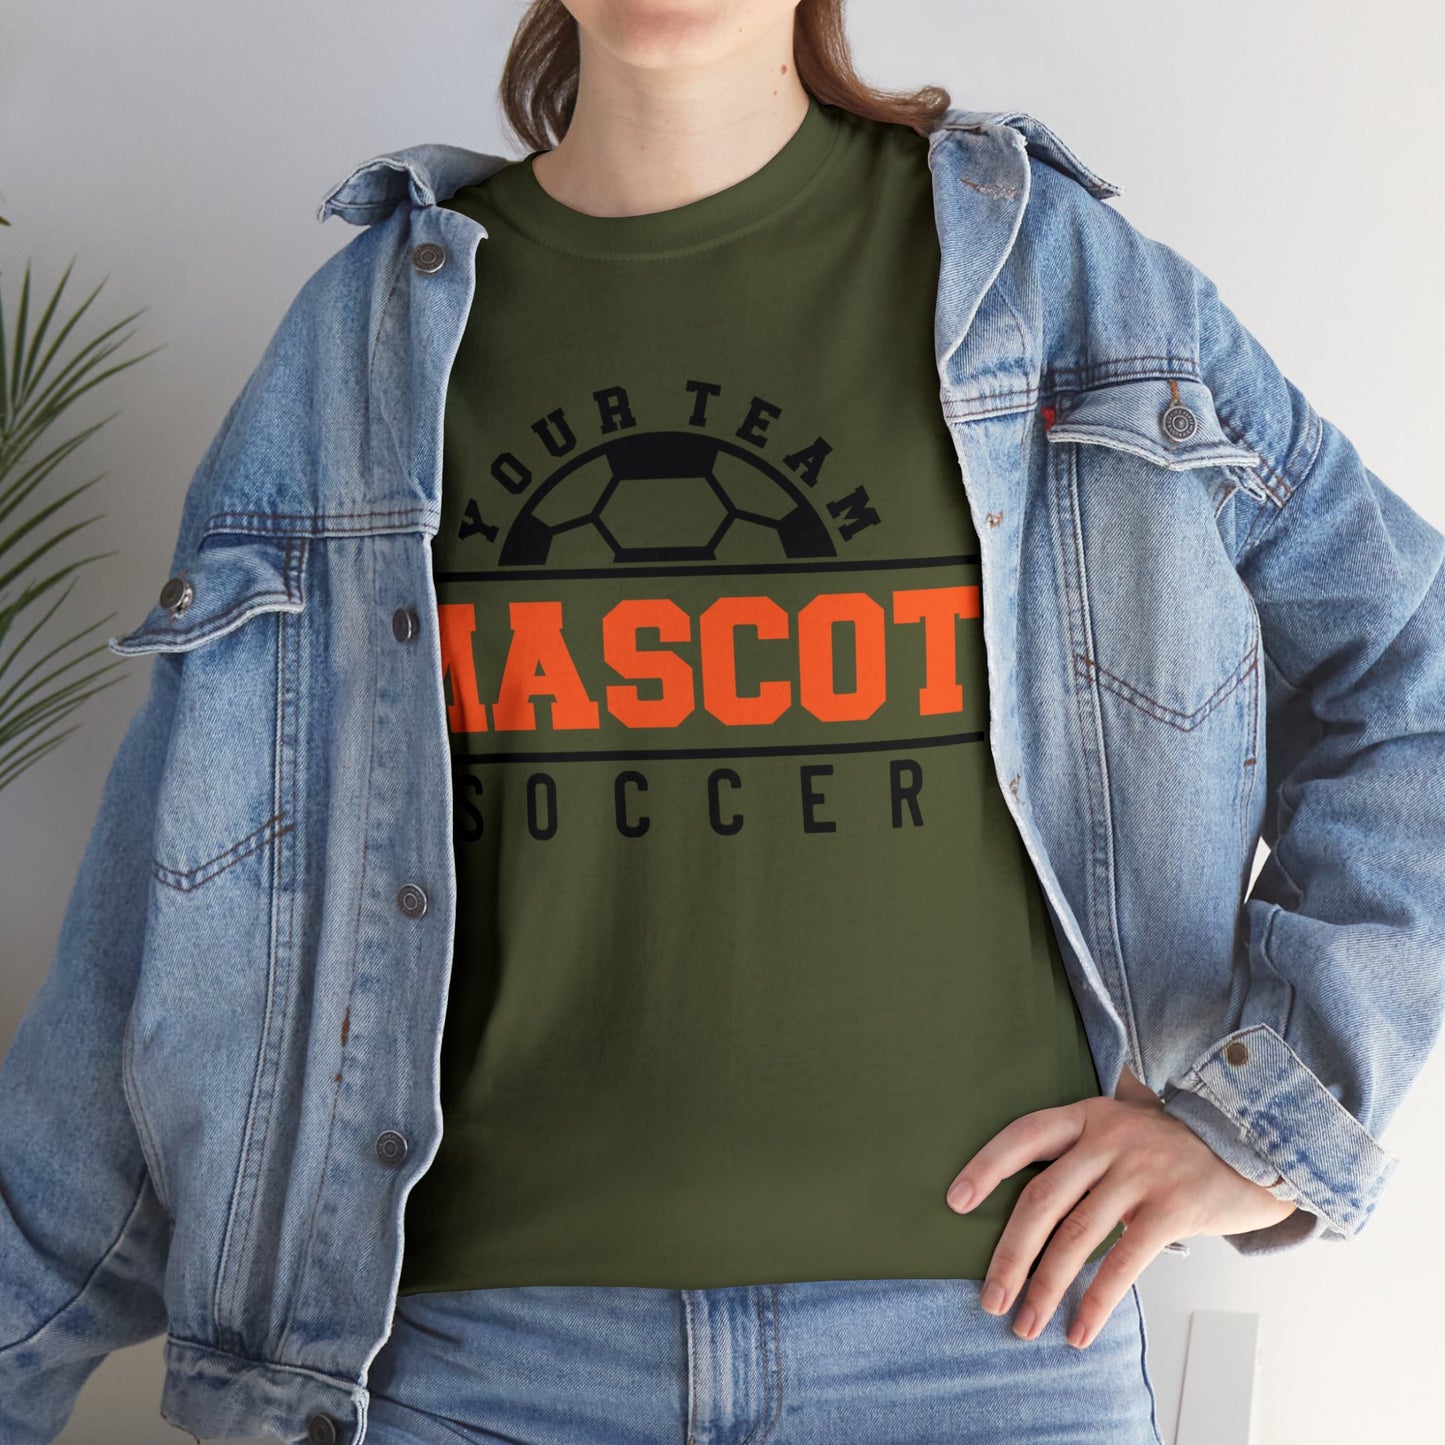 Custom School and Mascot SOCCER T-Shirt